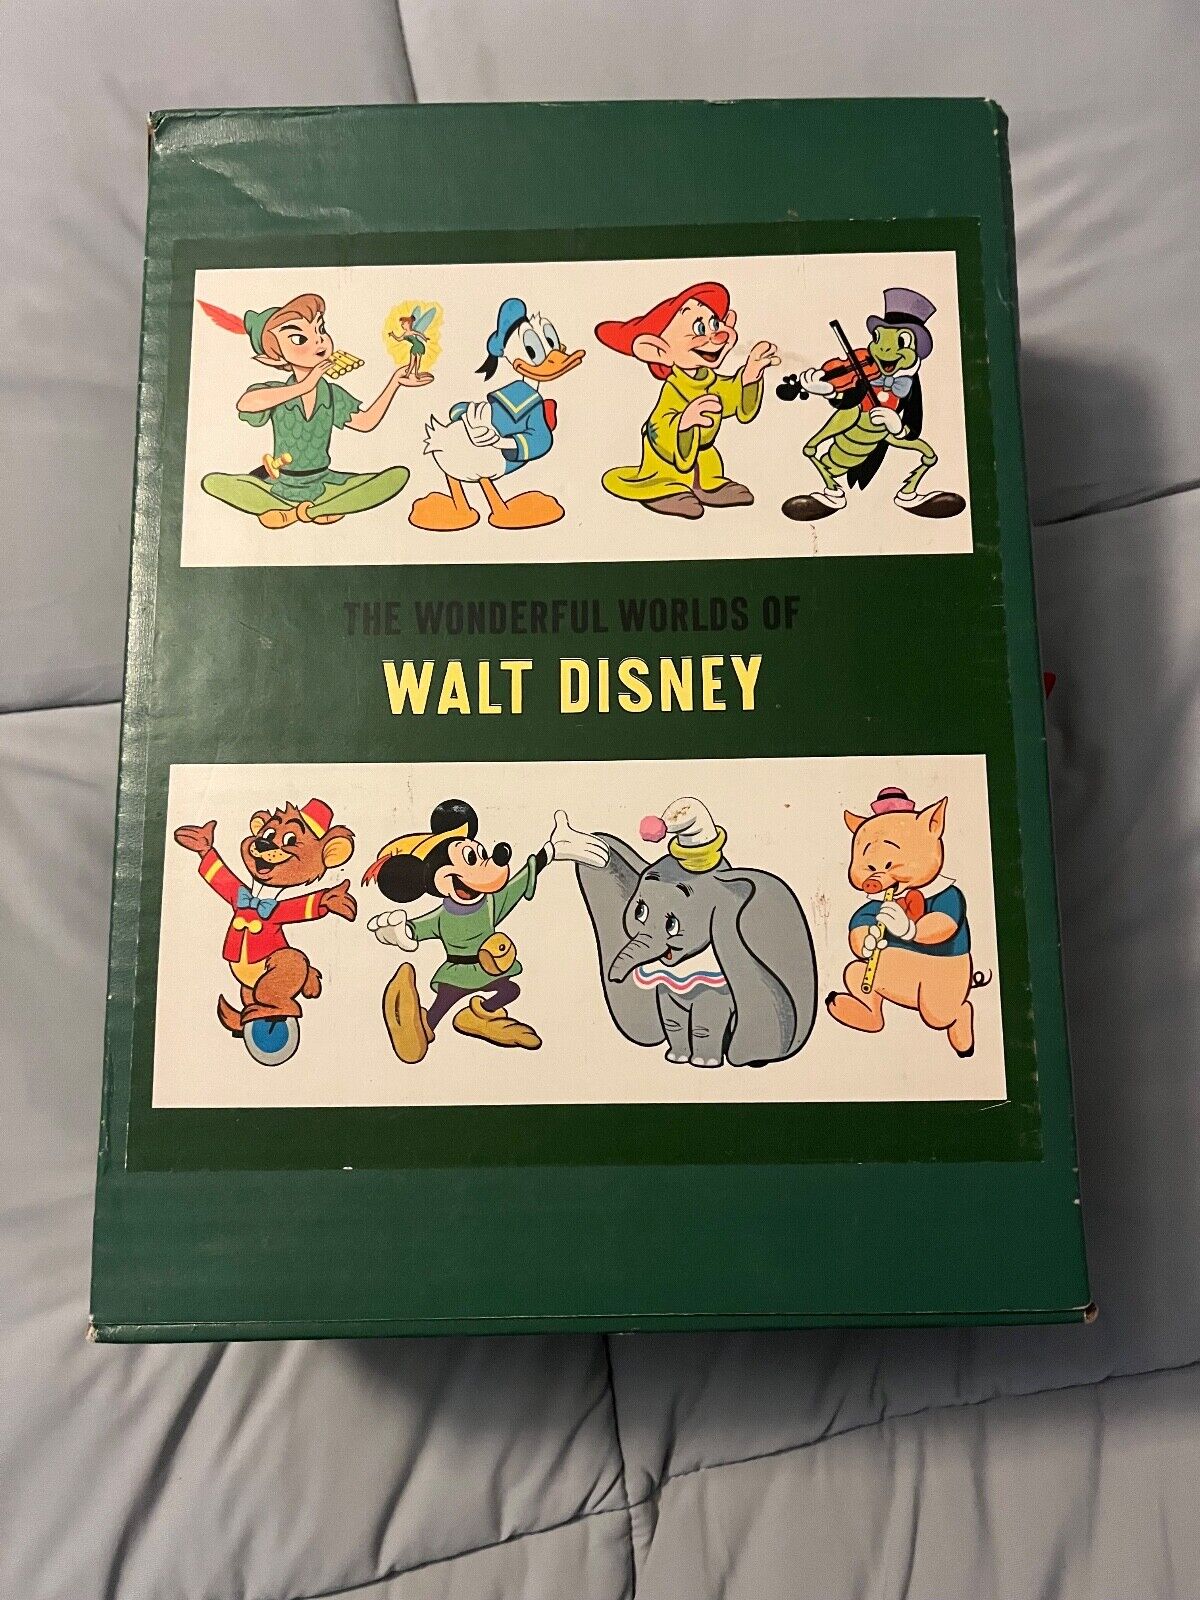 The Wonderful Worlds of Walt Disney Golden Press Book Lot Set Vintage 1965